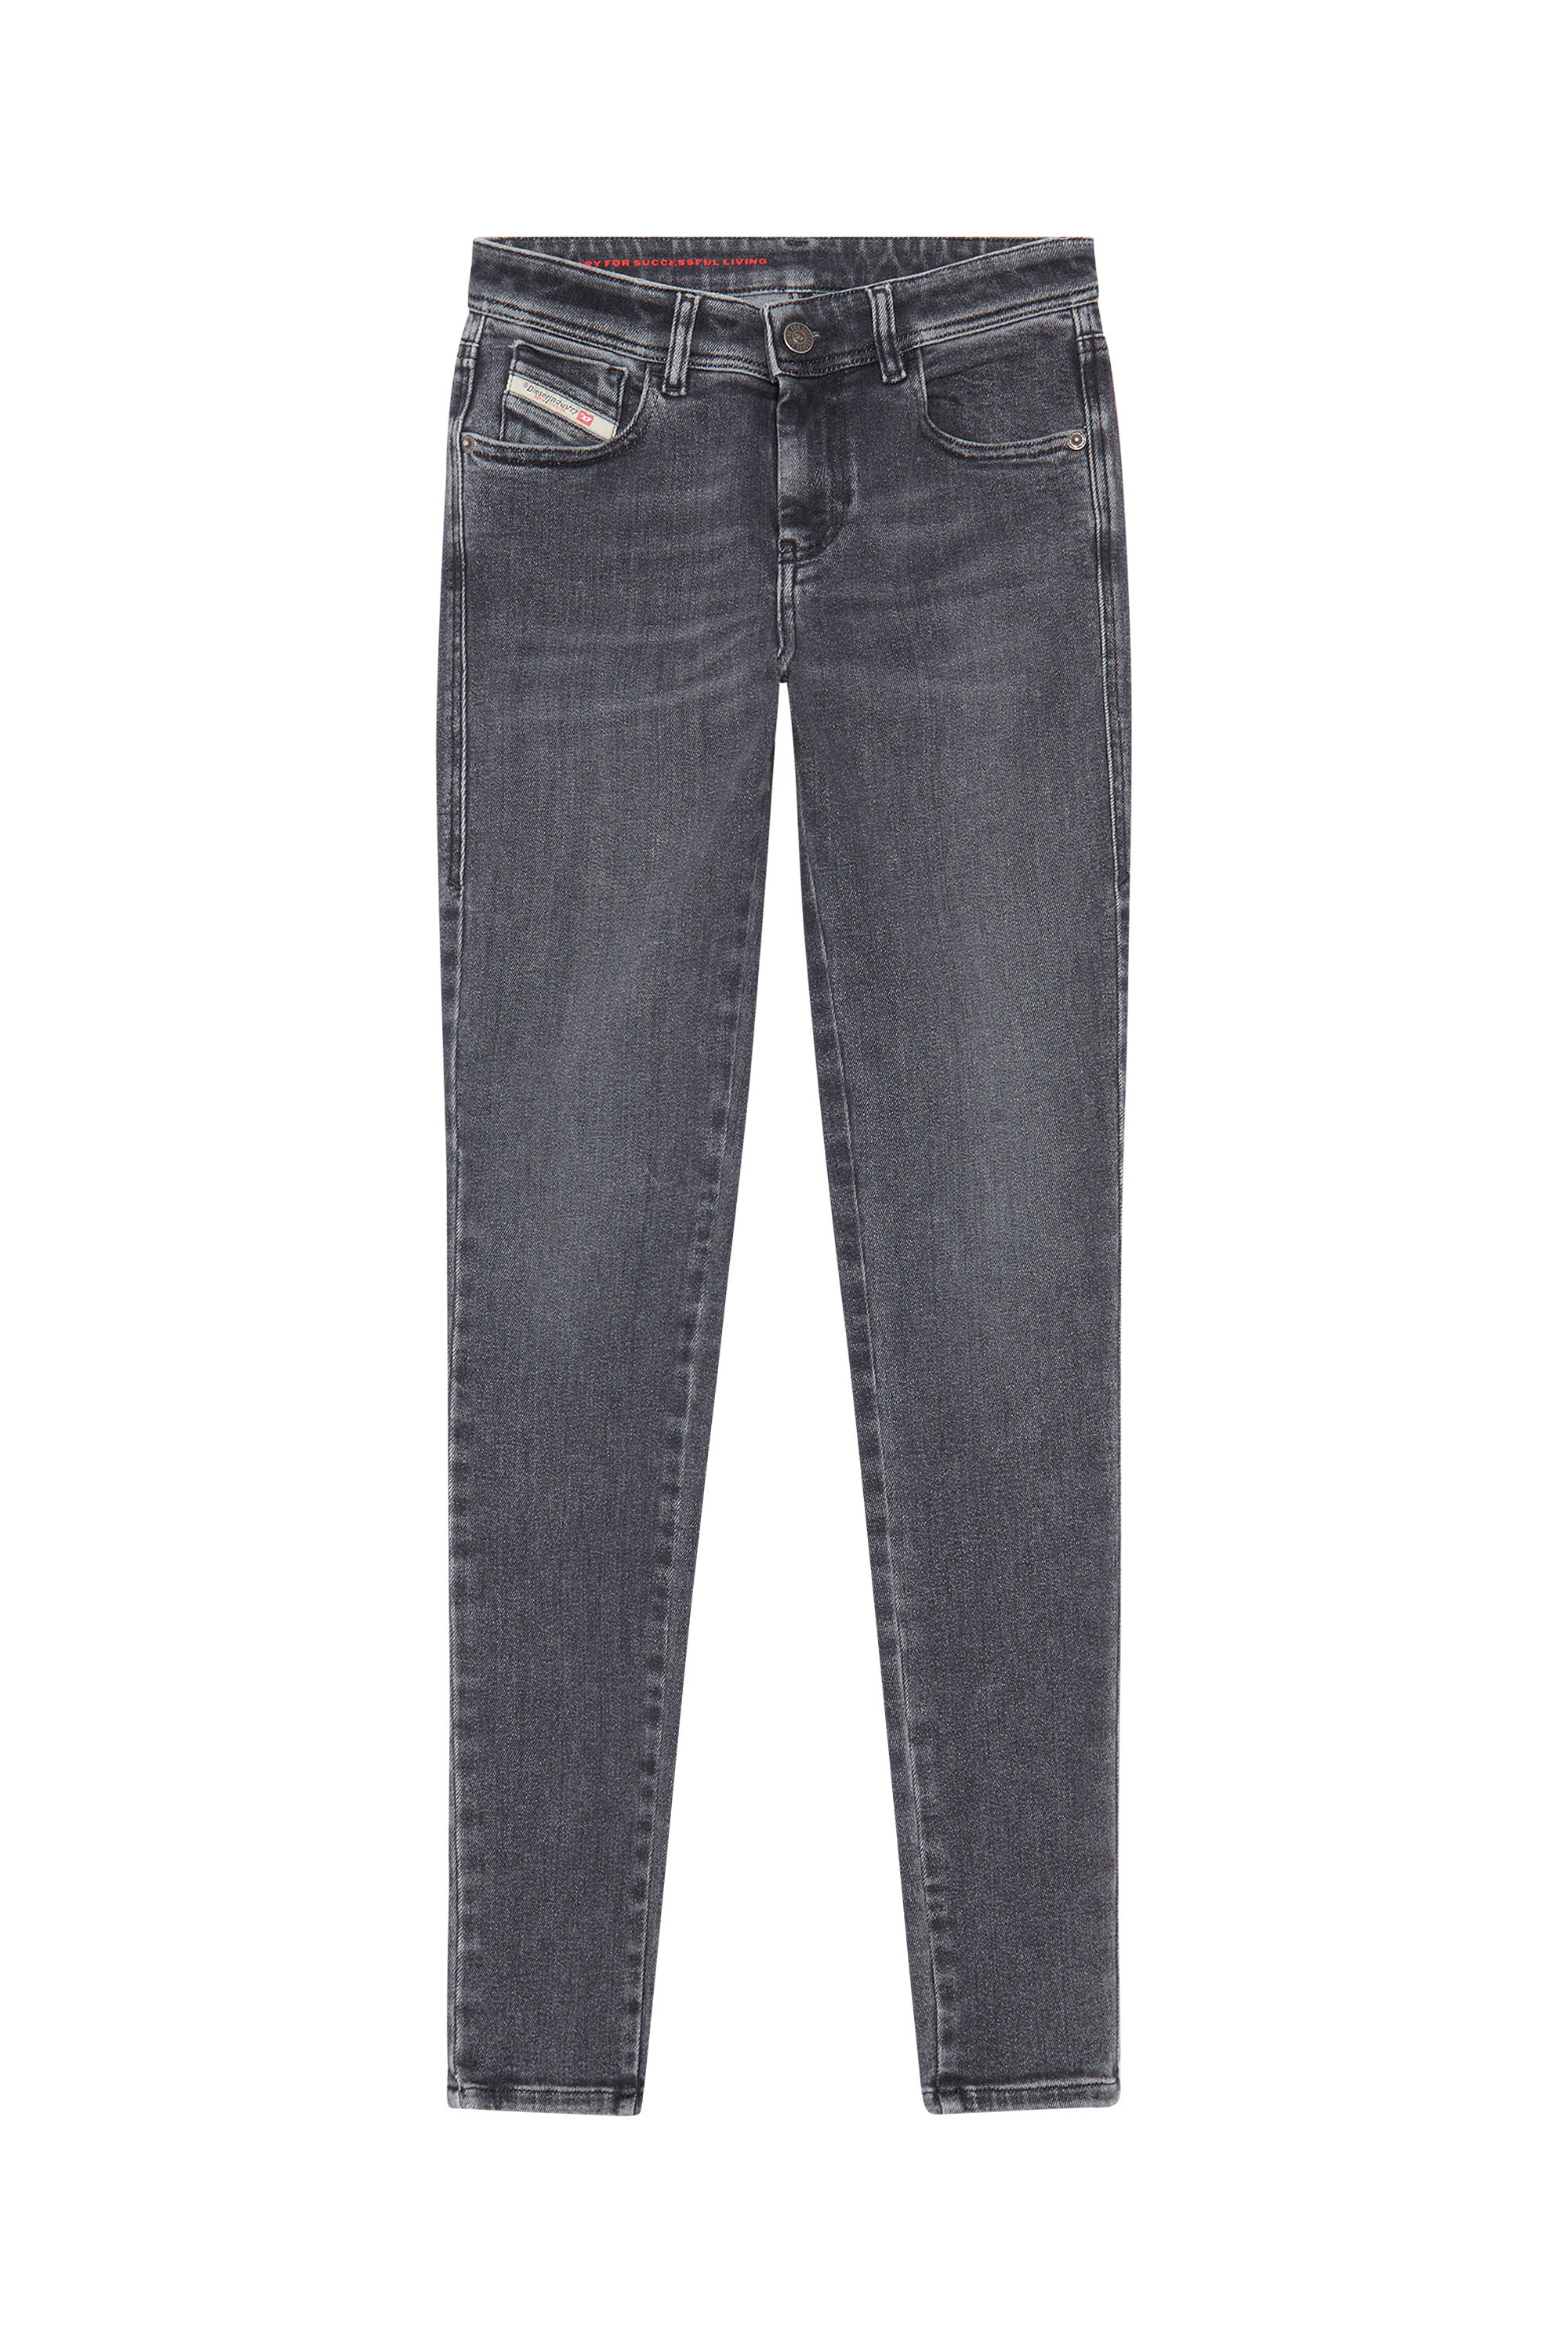 2017 Slandy 09D61 Super skinny Jeans, Black/Dark grey